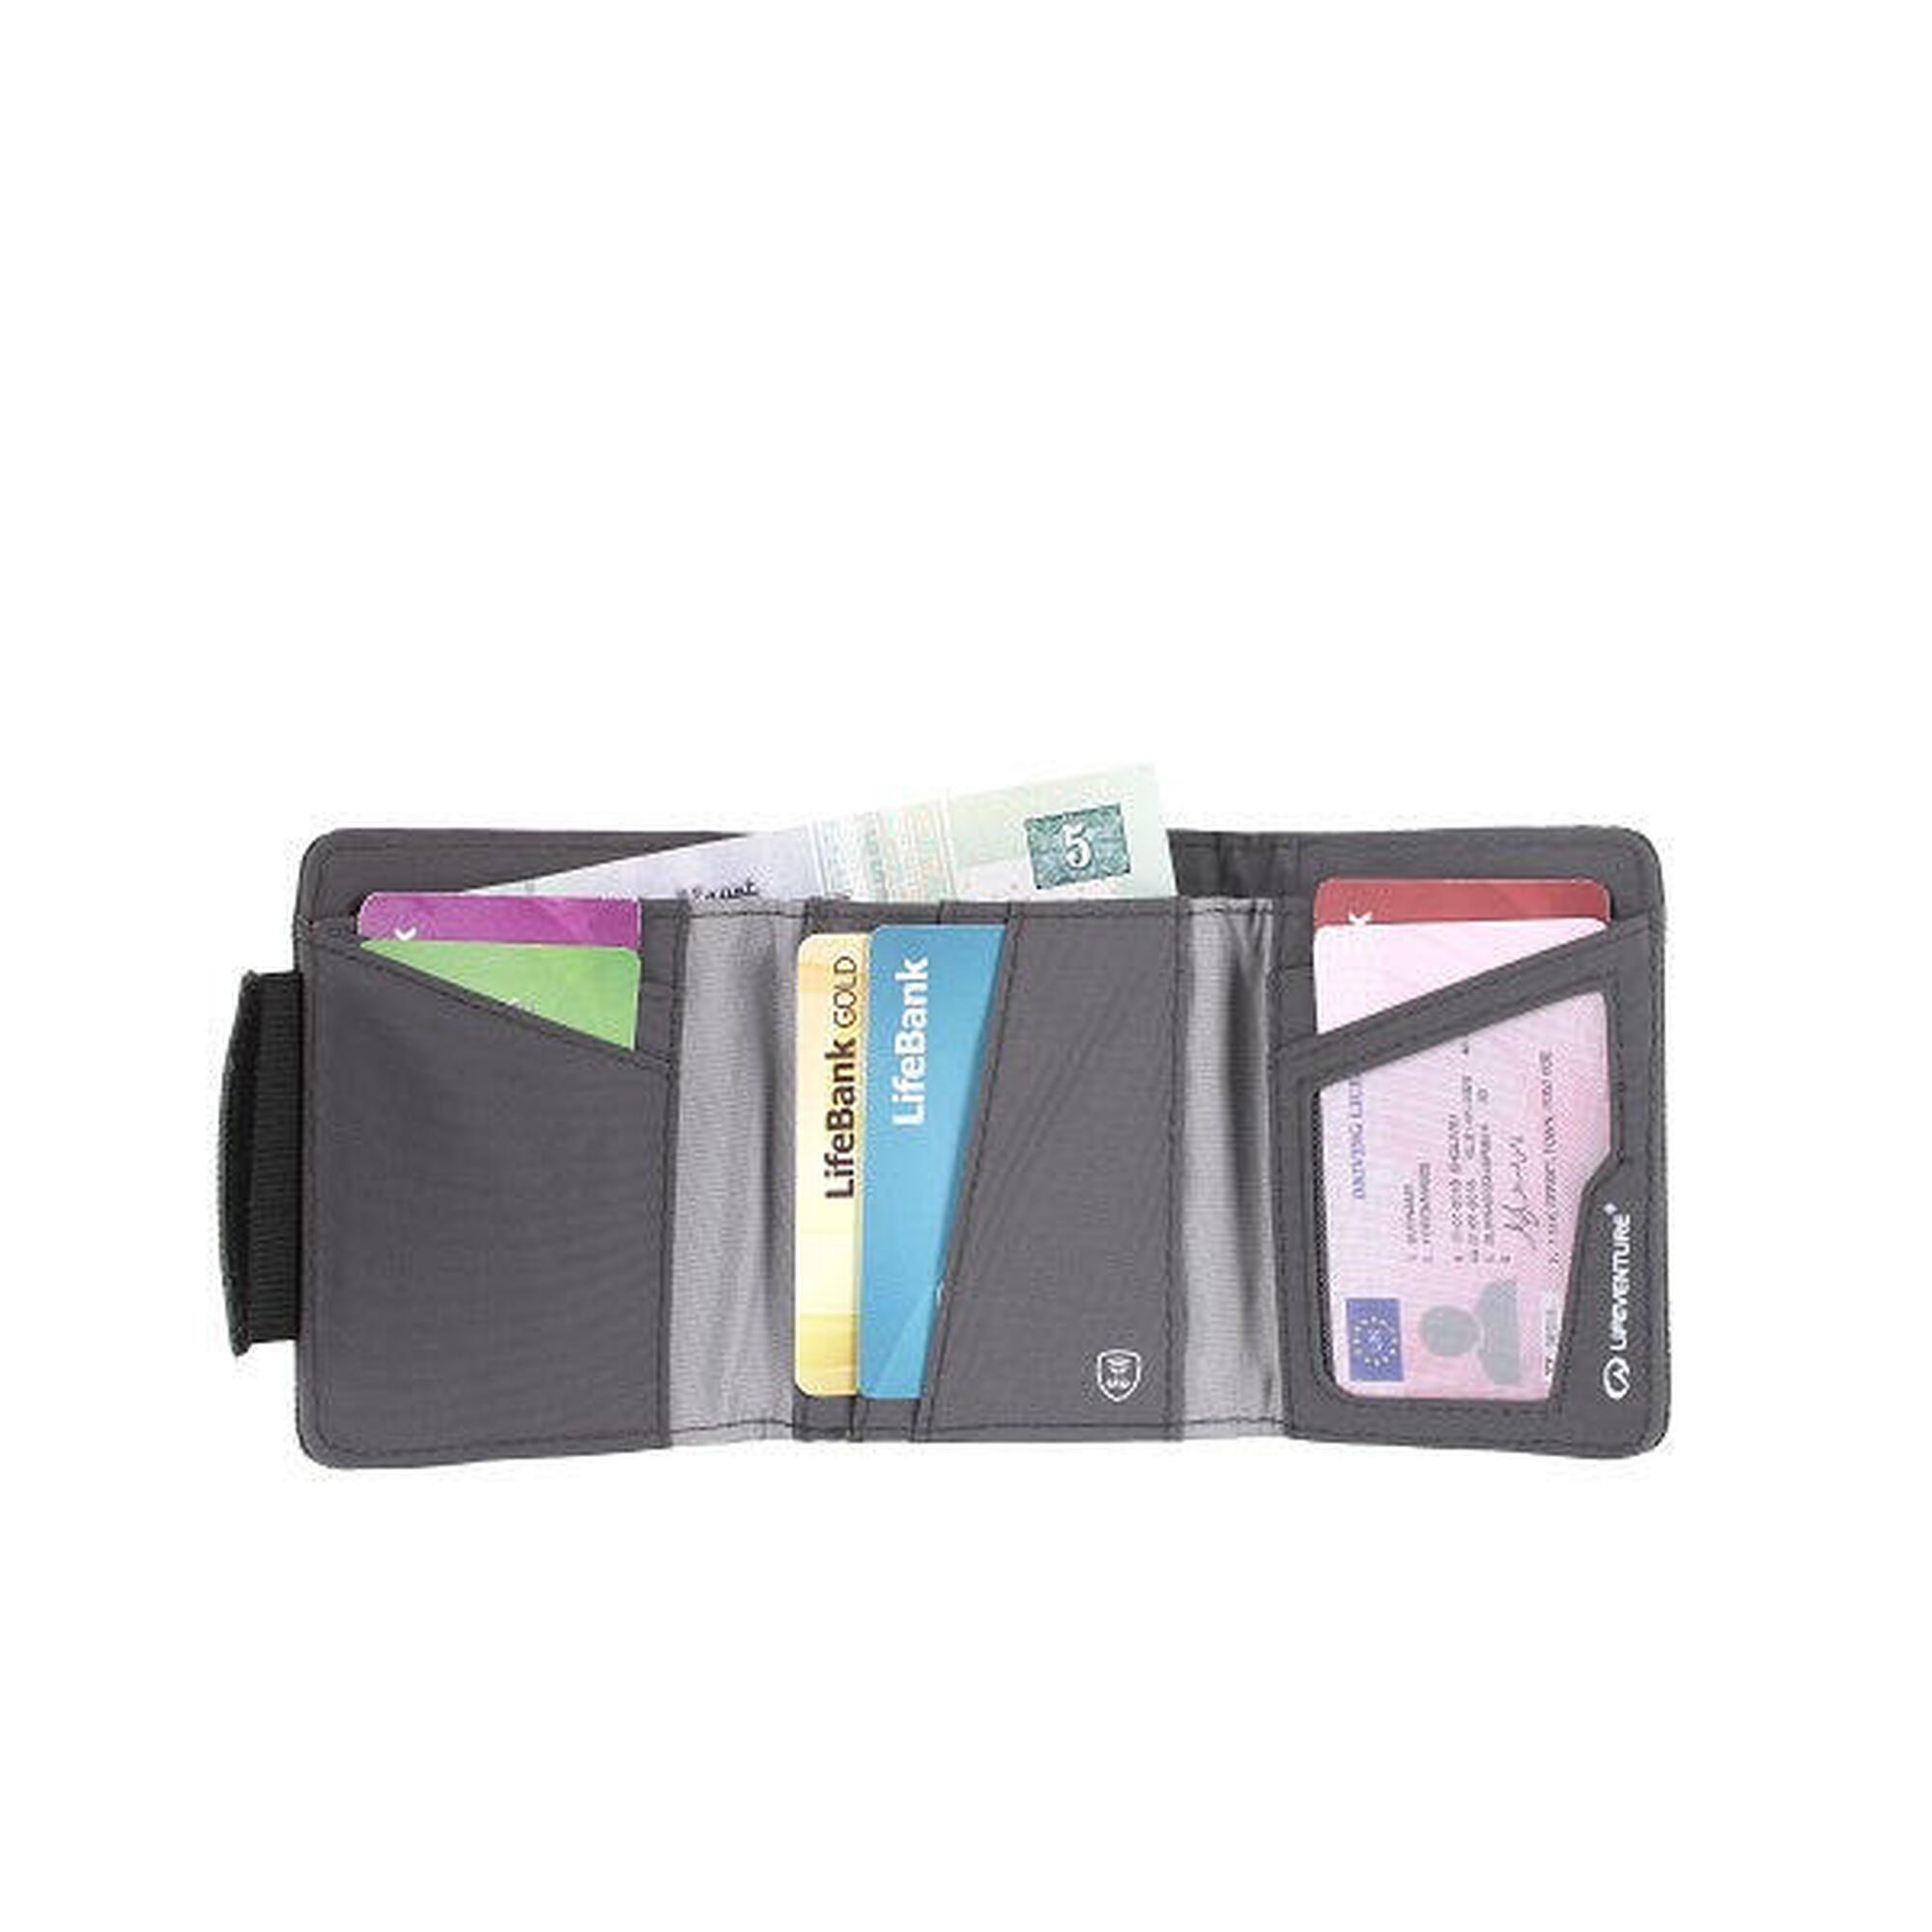 環保防盜RFID卡錢包(6卡插槽) - 藍色